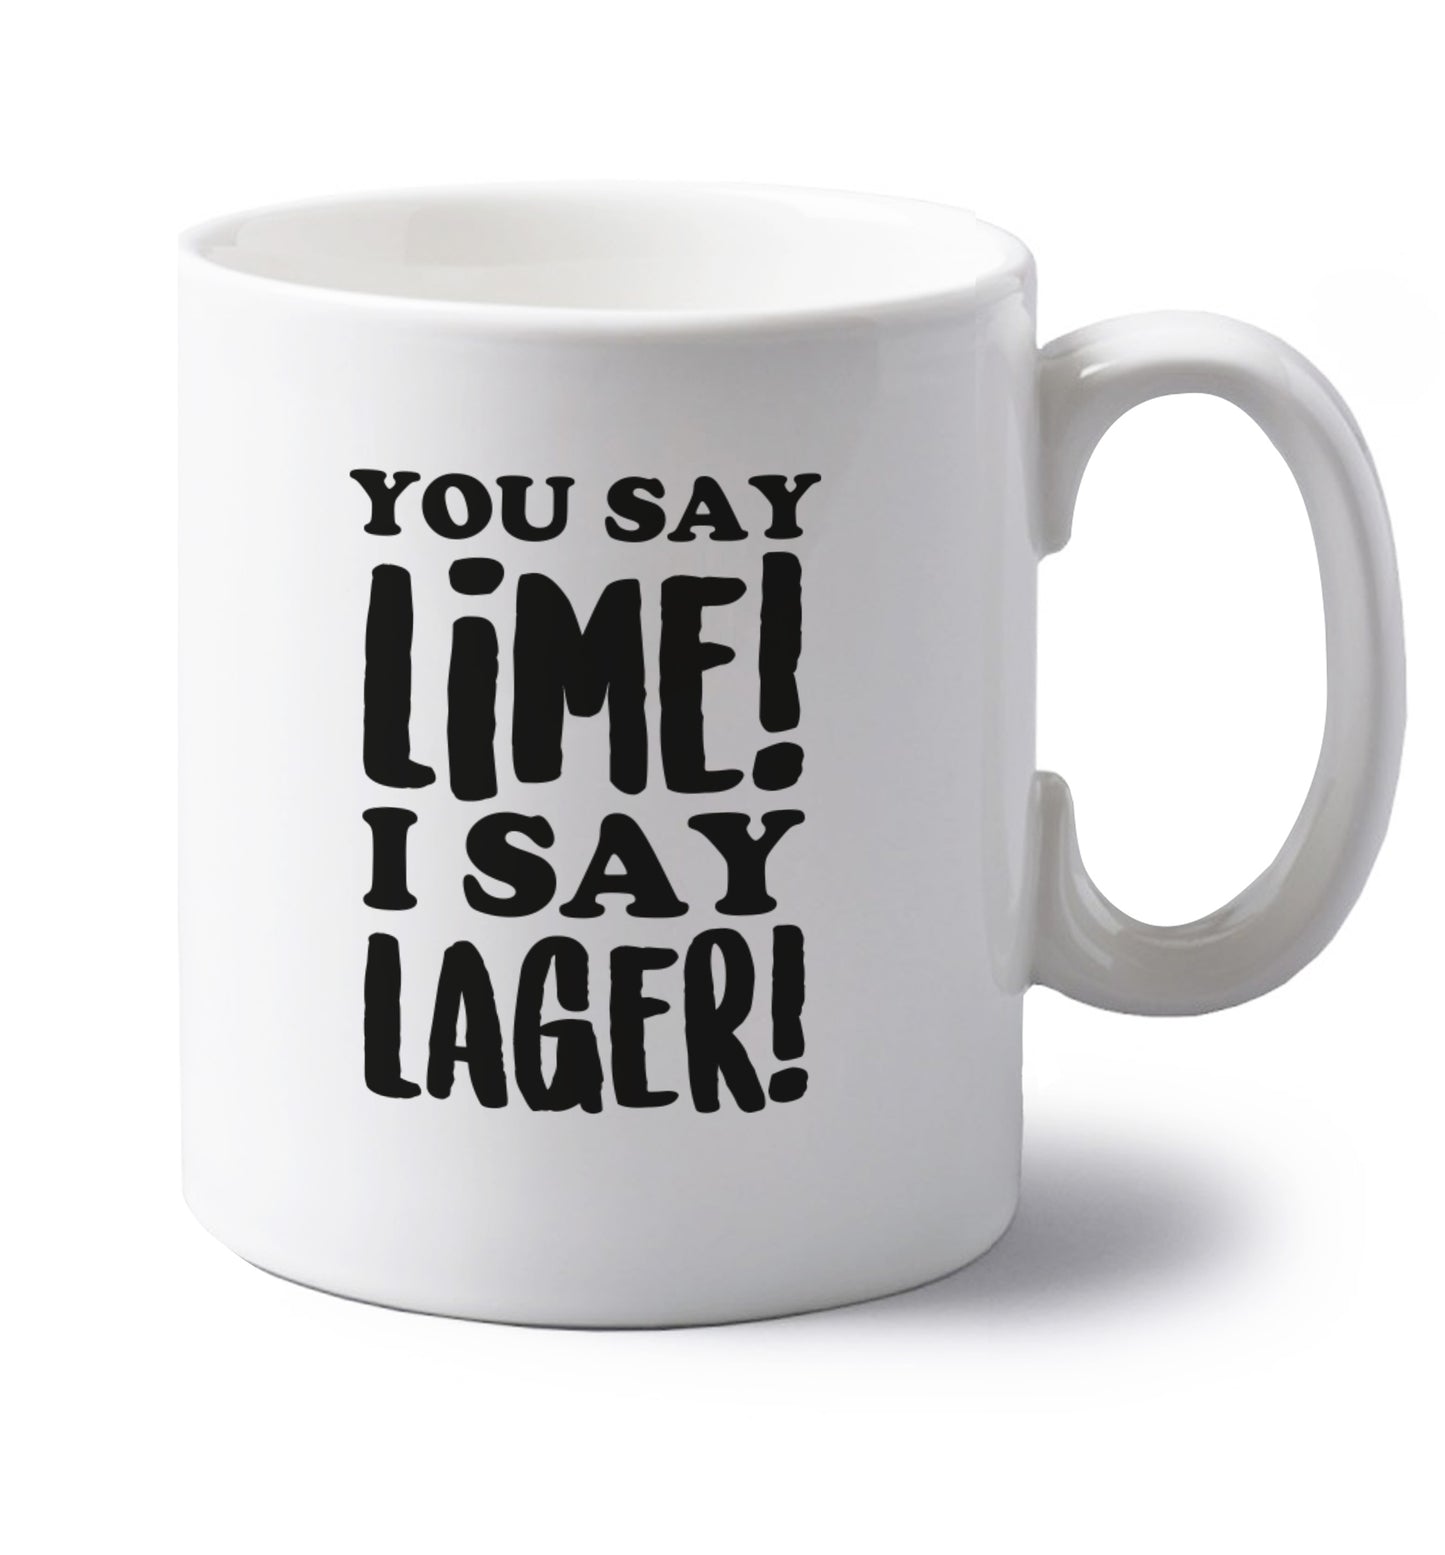 You say lime I say lager! left handed white ceramic mug 